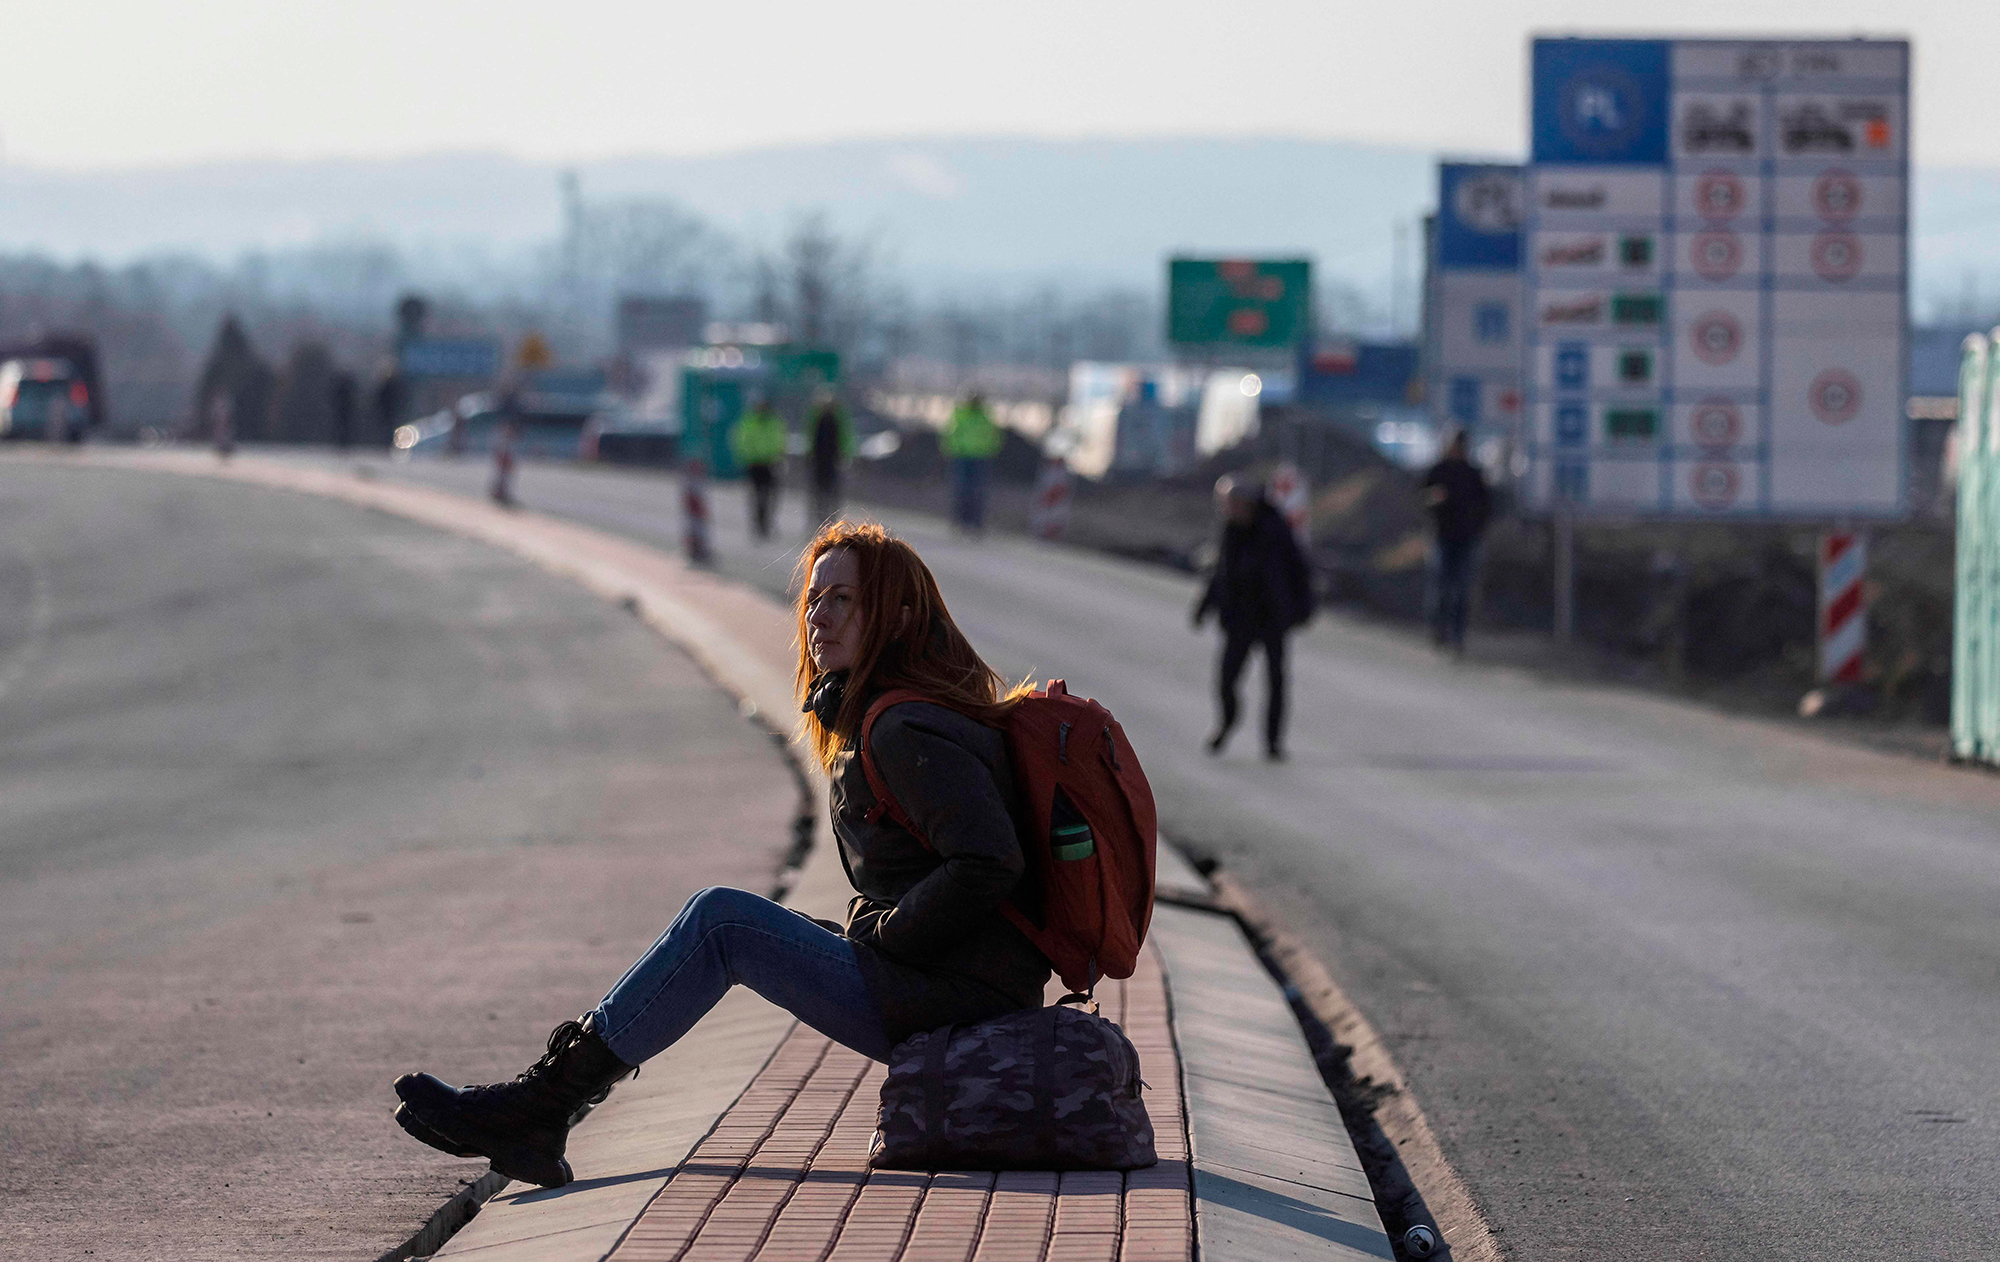 "Остаться может половина". Какие планы беженцев в Польше, Чехии и Румынии